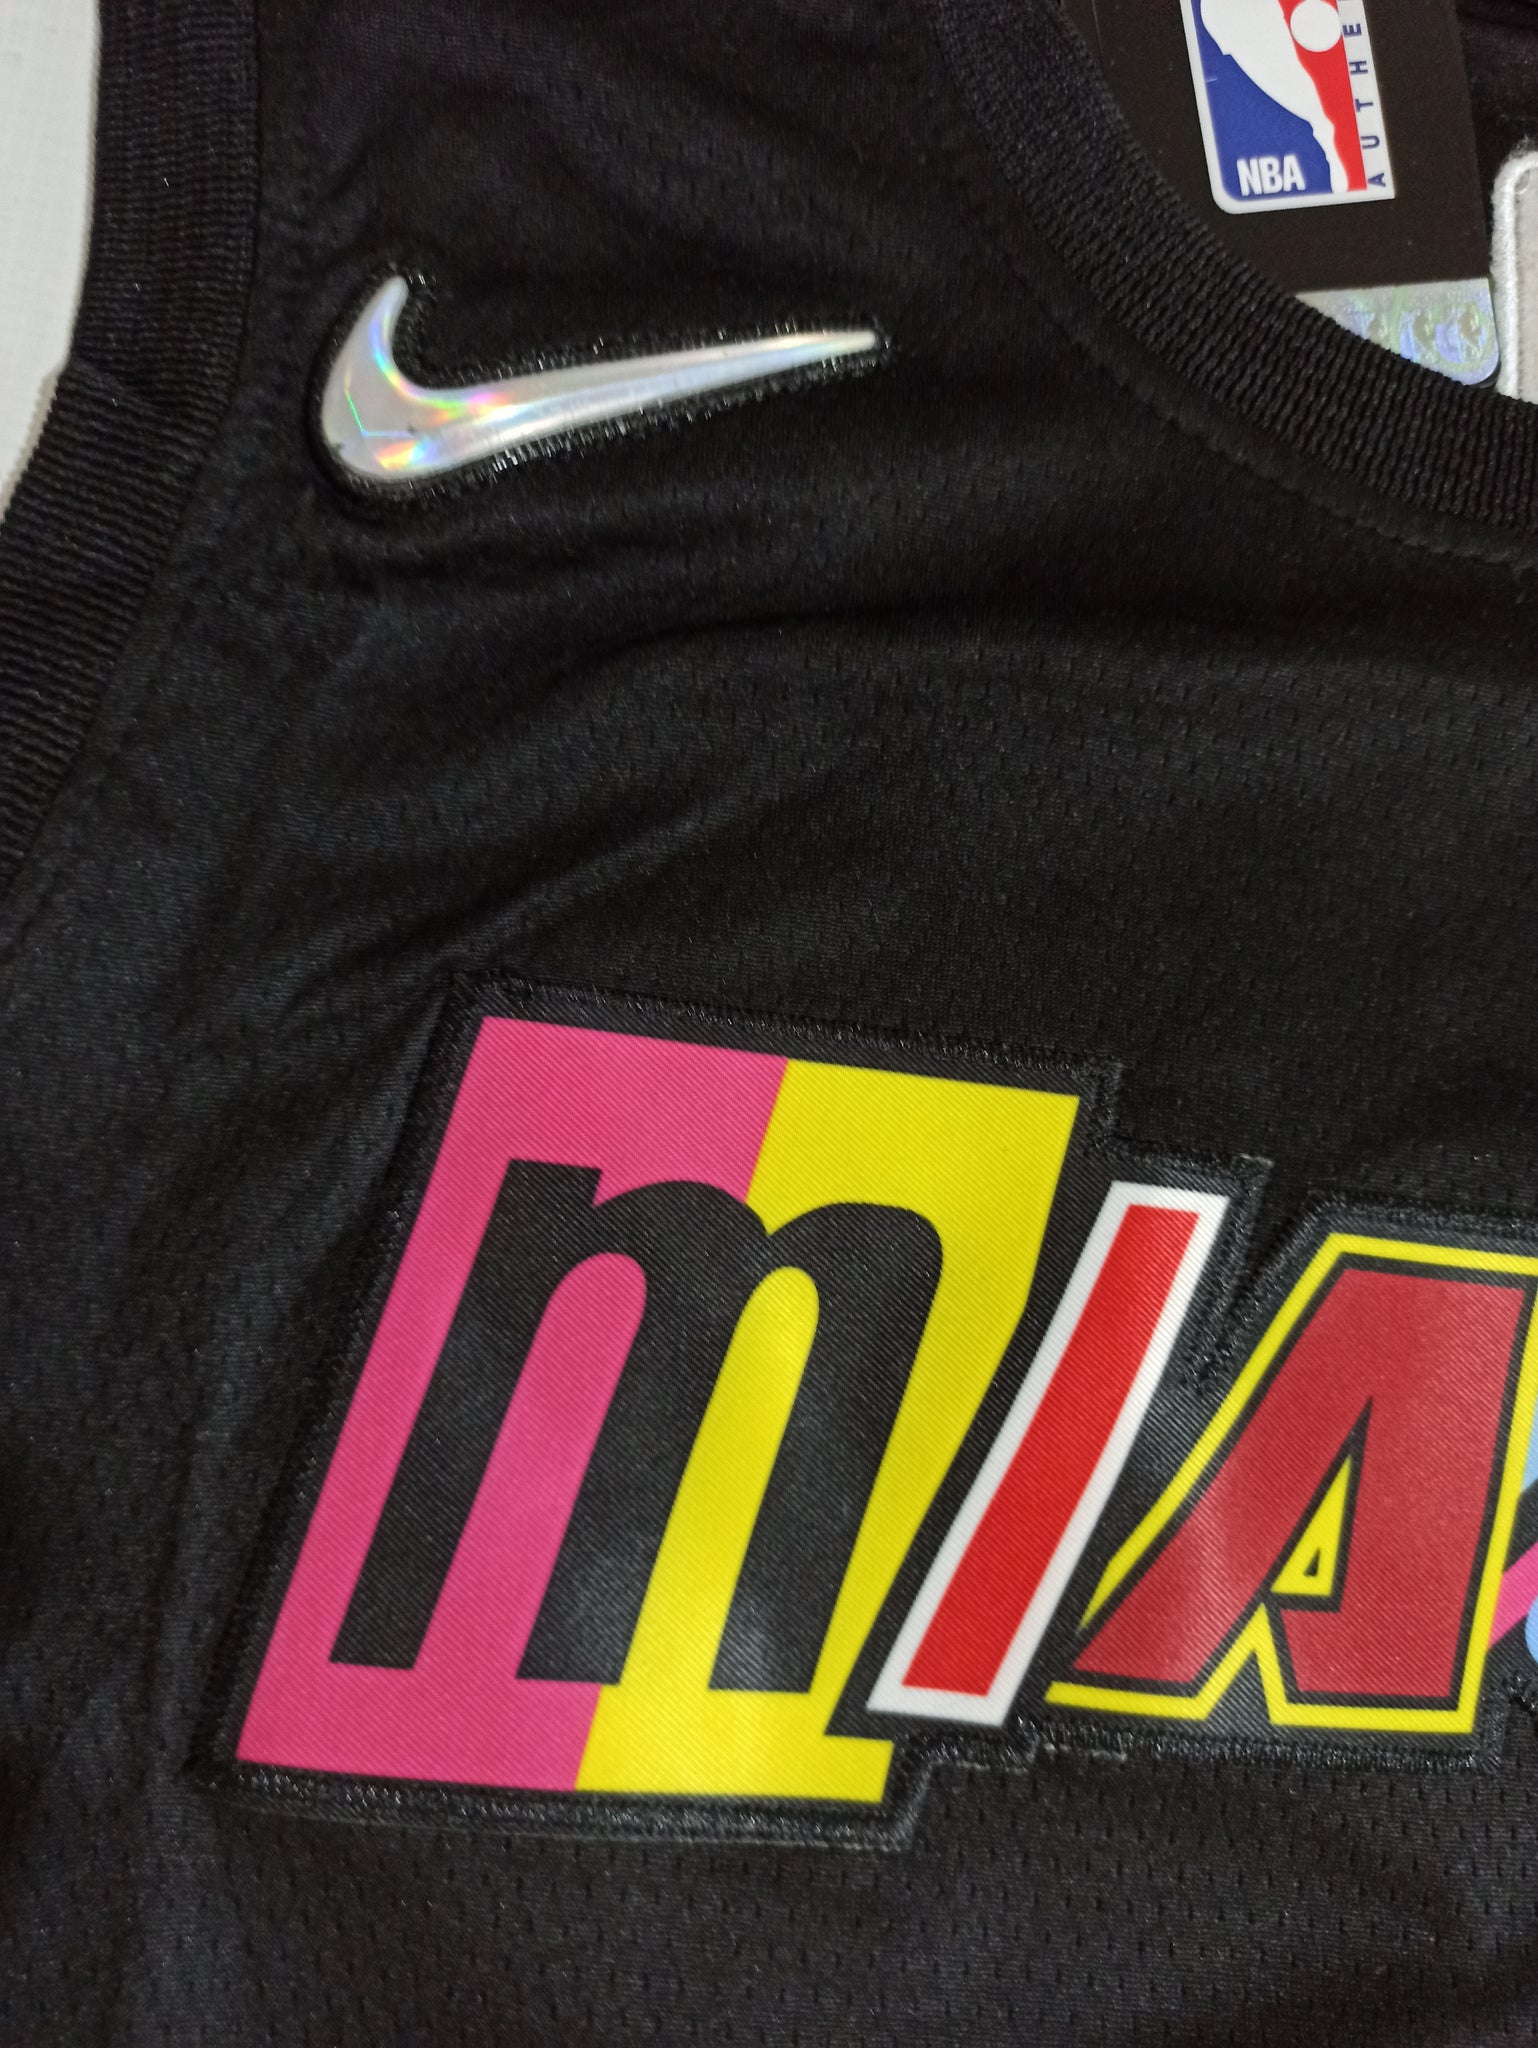 Tiendas De Camisetas Miami Heat (Butler #22) Negro